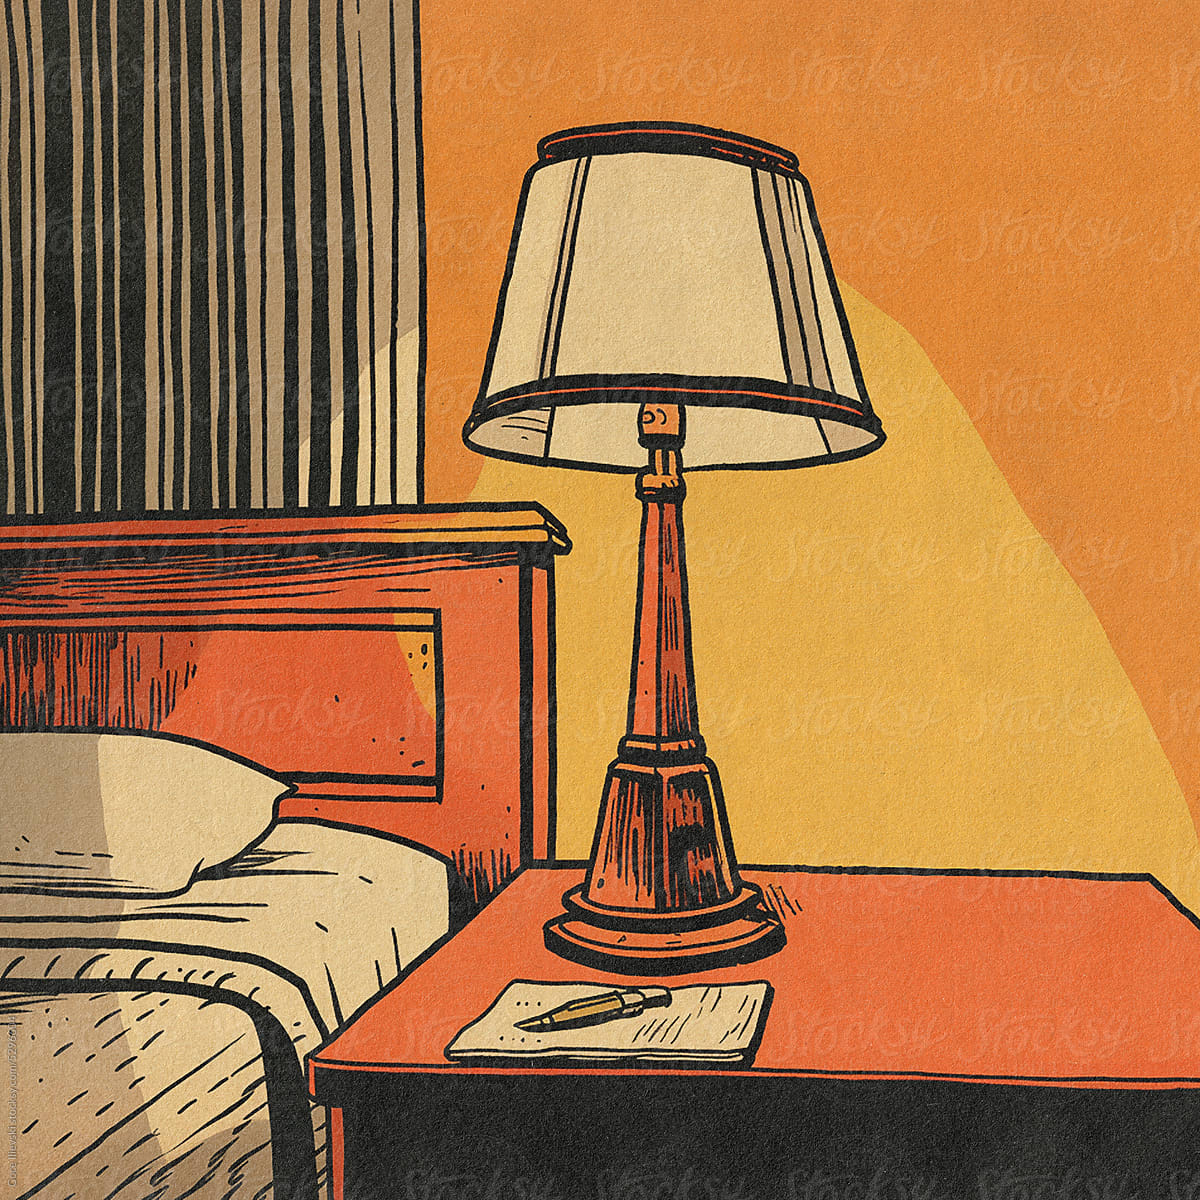 Hotel Room Bedside Table Lamp Illustration